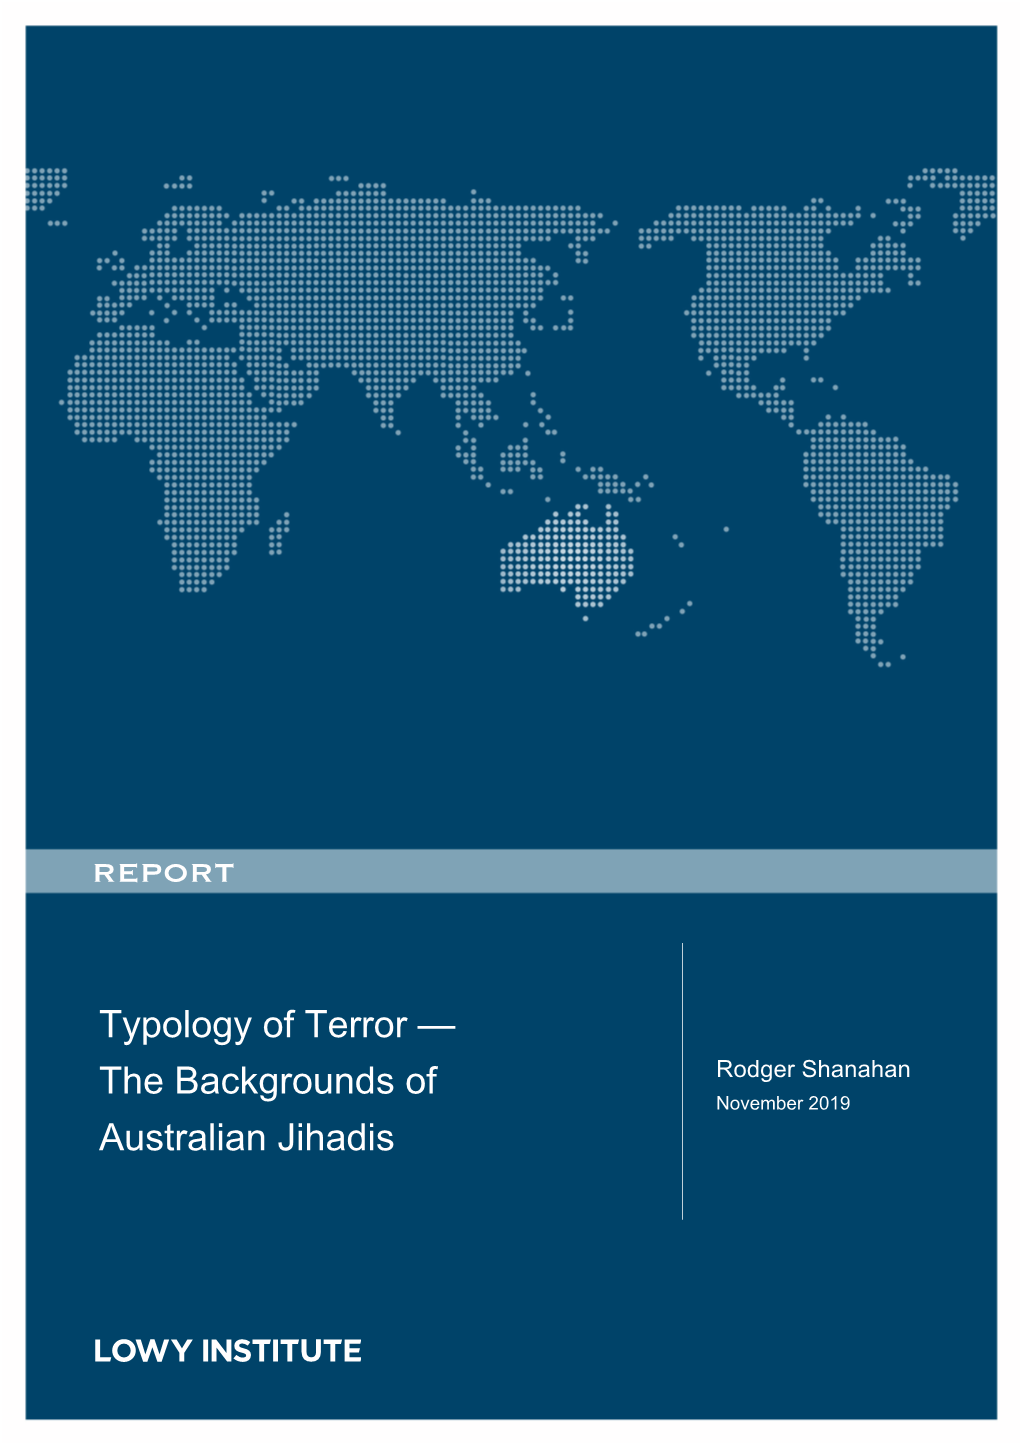 Typology of Terror — the Backgrounds of Australian Jihadis